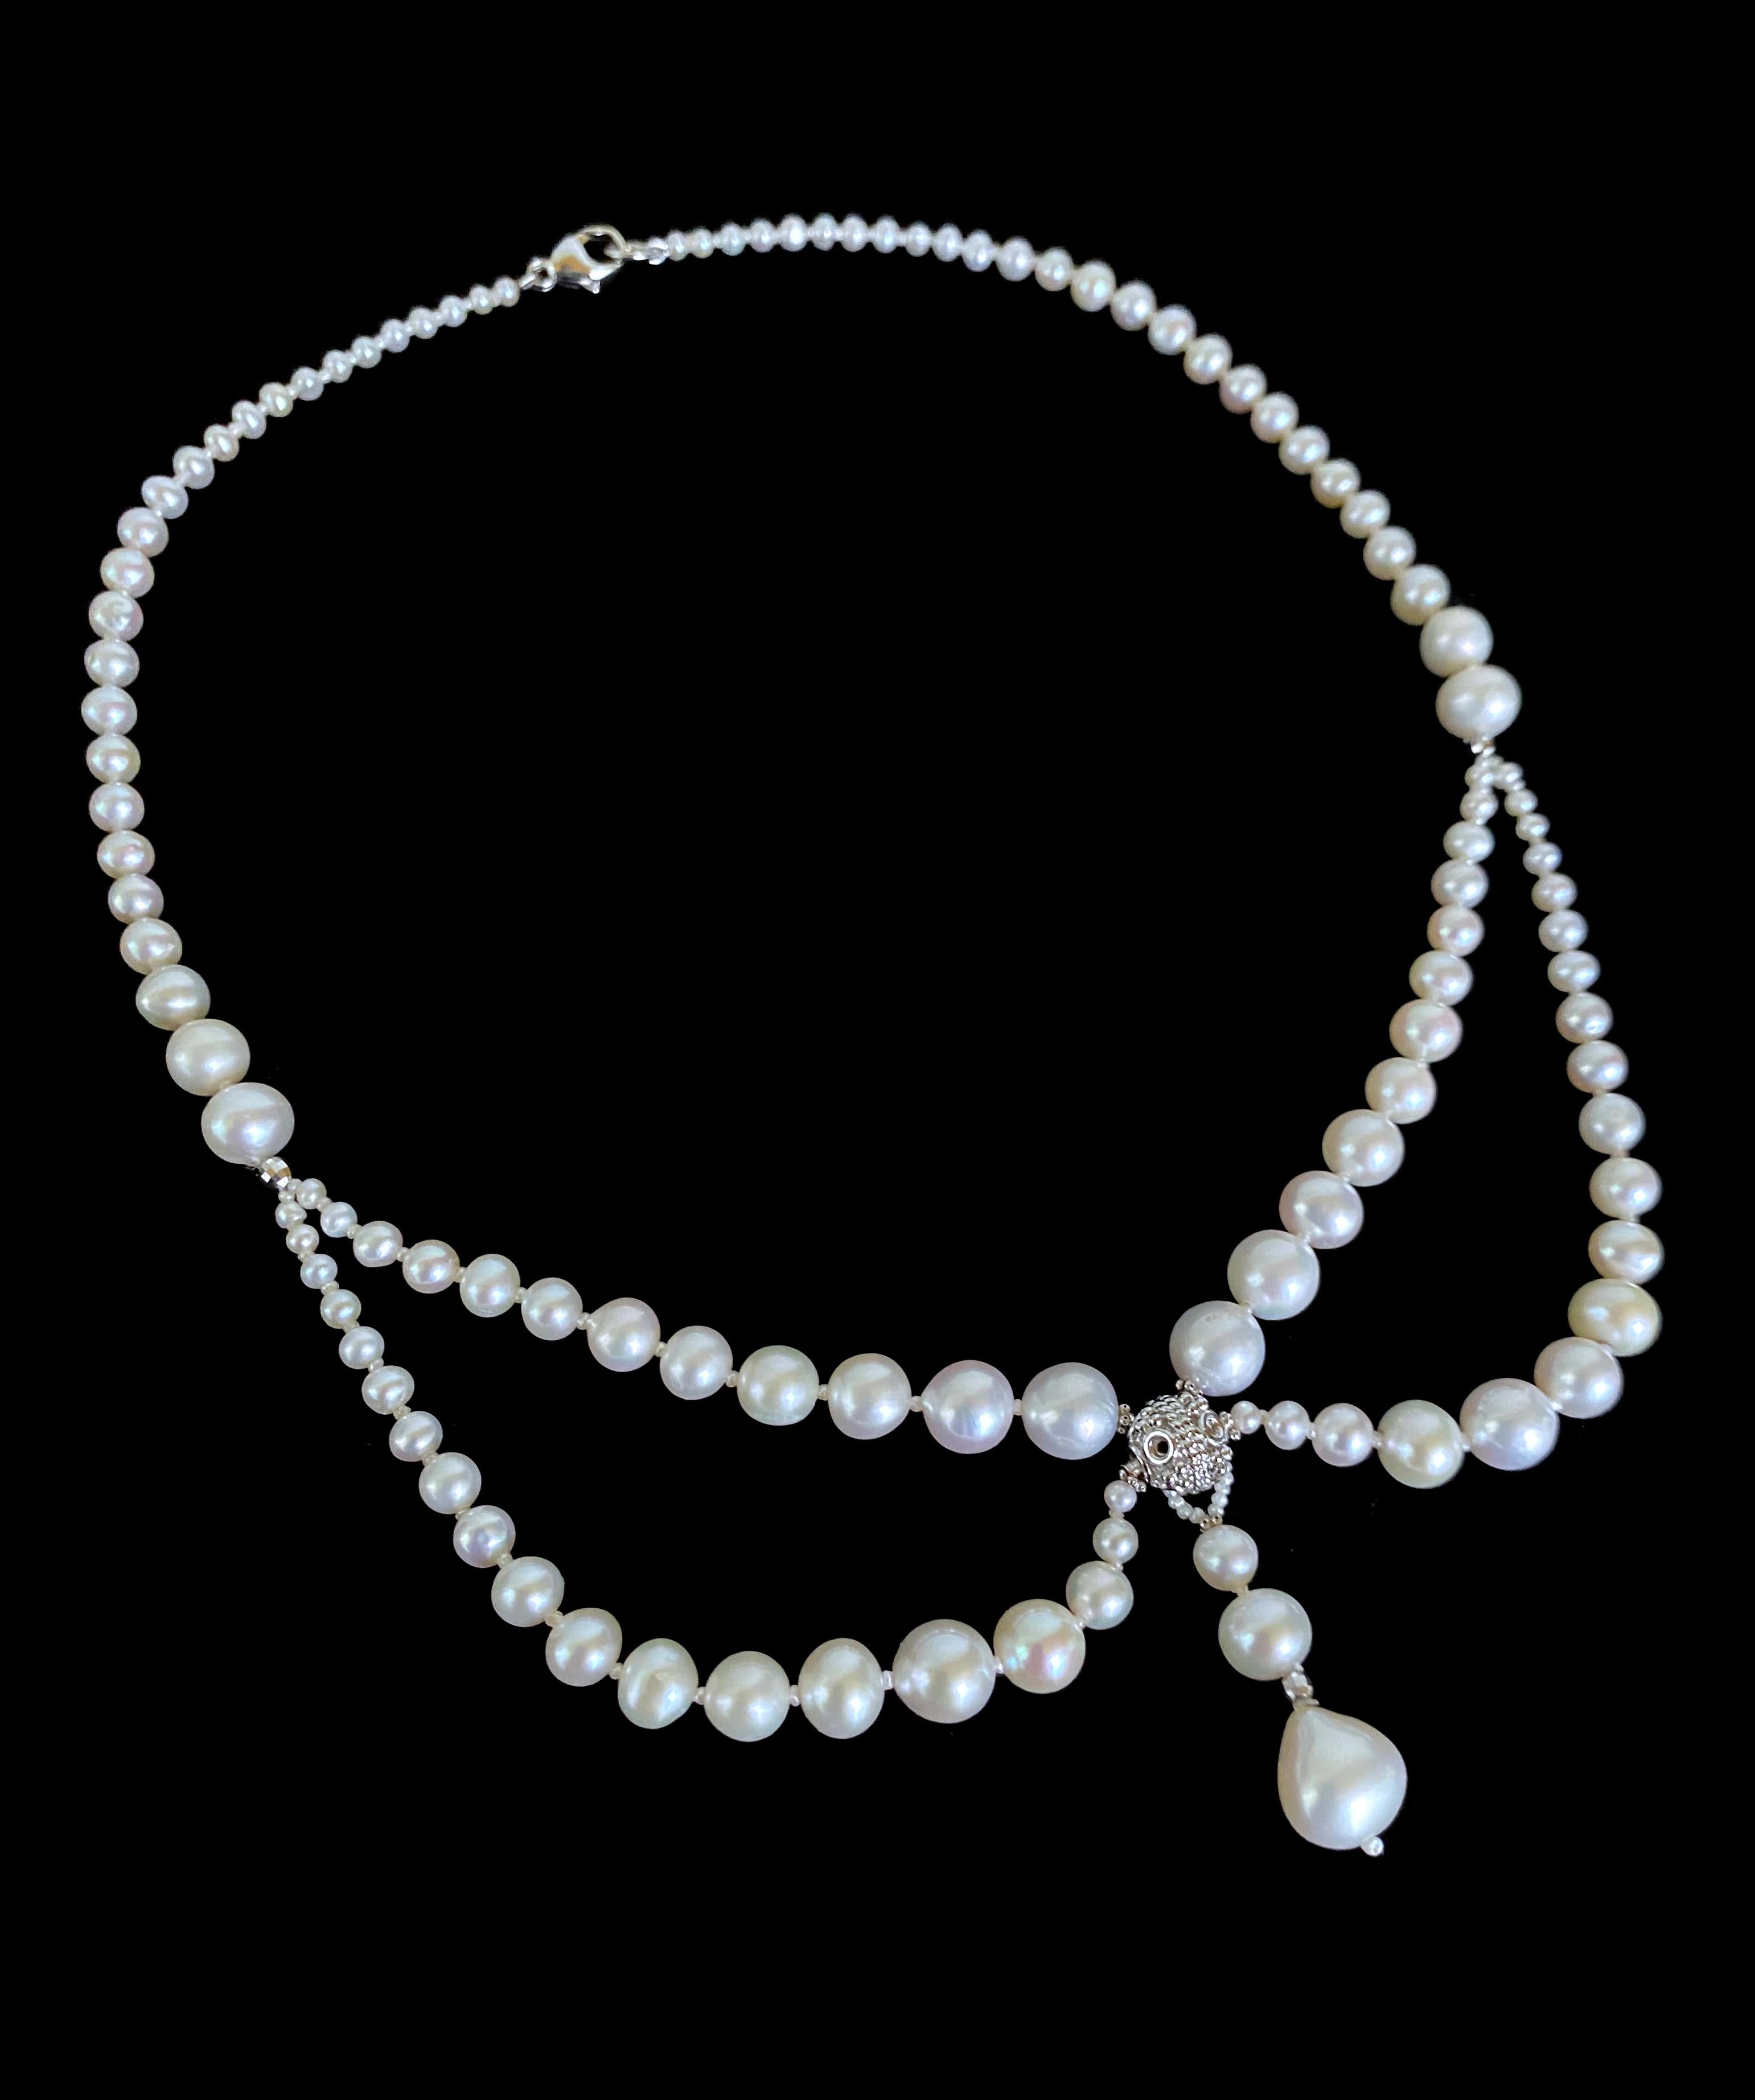 Wunderschöne viktorianisch inspirierte Halskette von Marina J. Dieses reizende Stück verfügt über eine rhodinierte, versilberte, filigrane Perle, die das Herzstück bildet. Um ihn herum sind Stränge aus abgestuften Perlen drapiert, die ihm einen